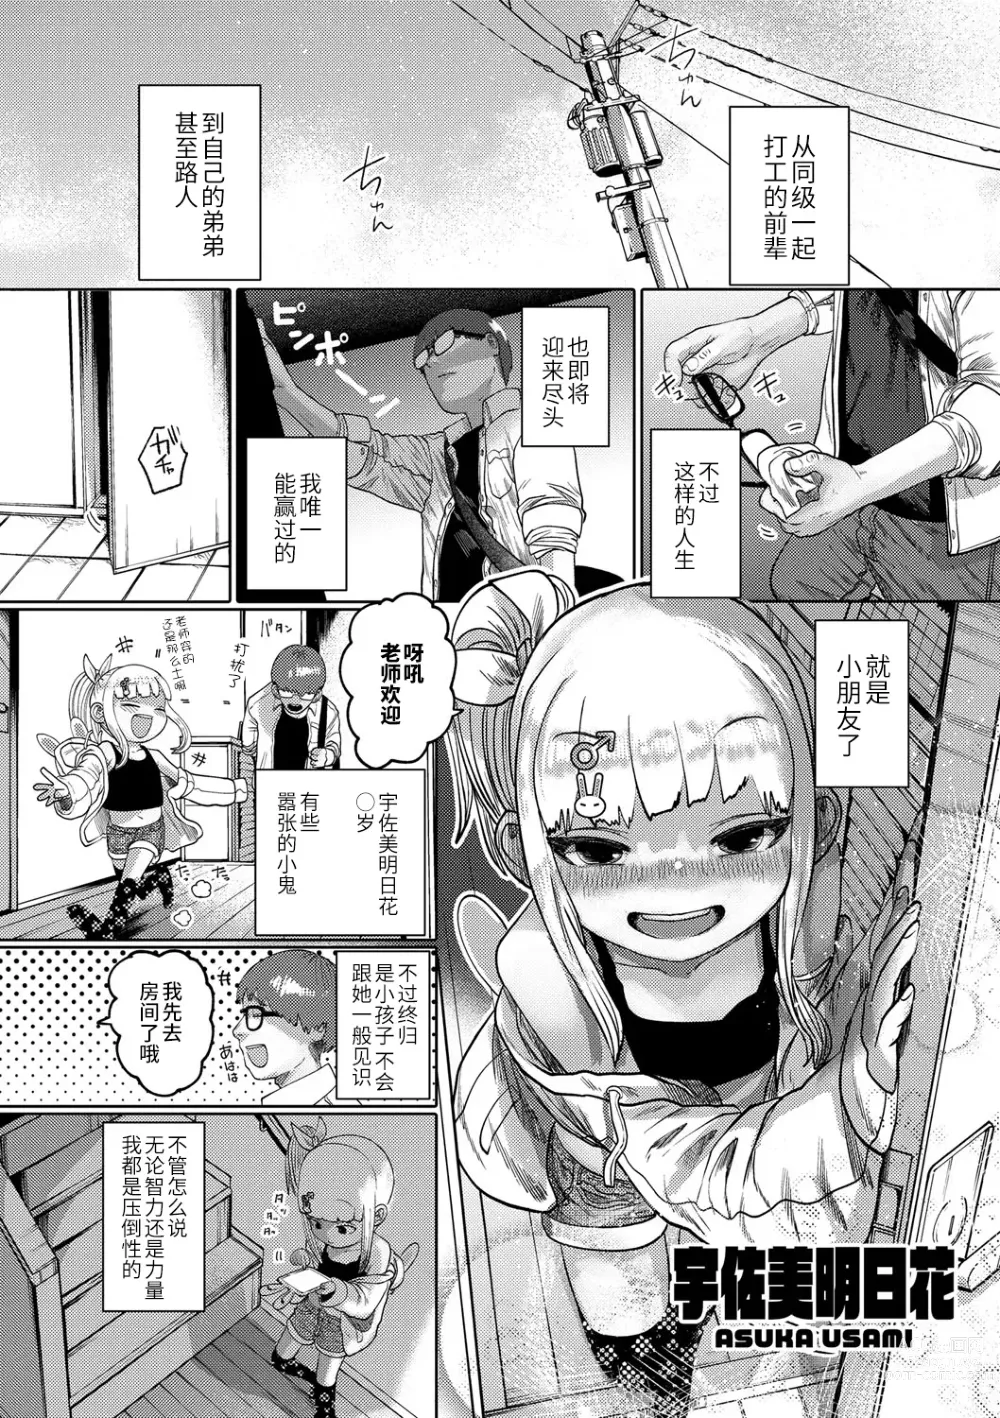 Page 2 of manga ねーうしとらうー! #1-4